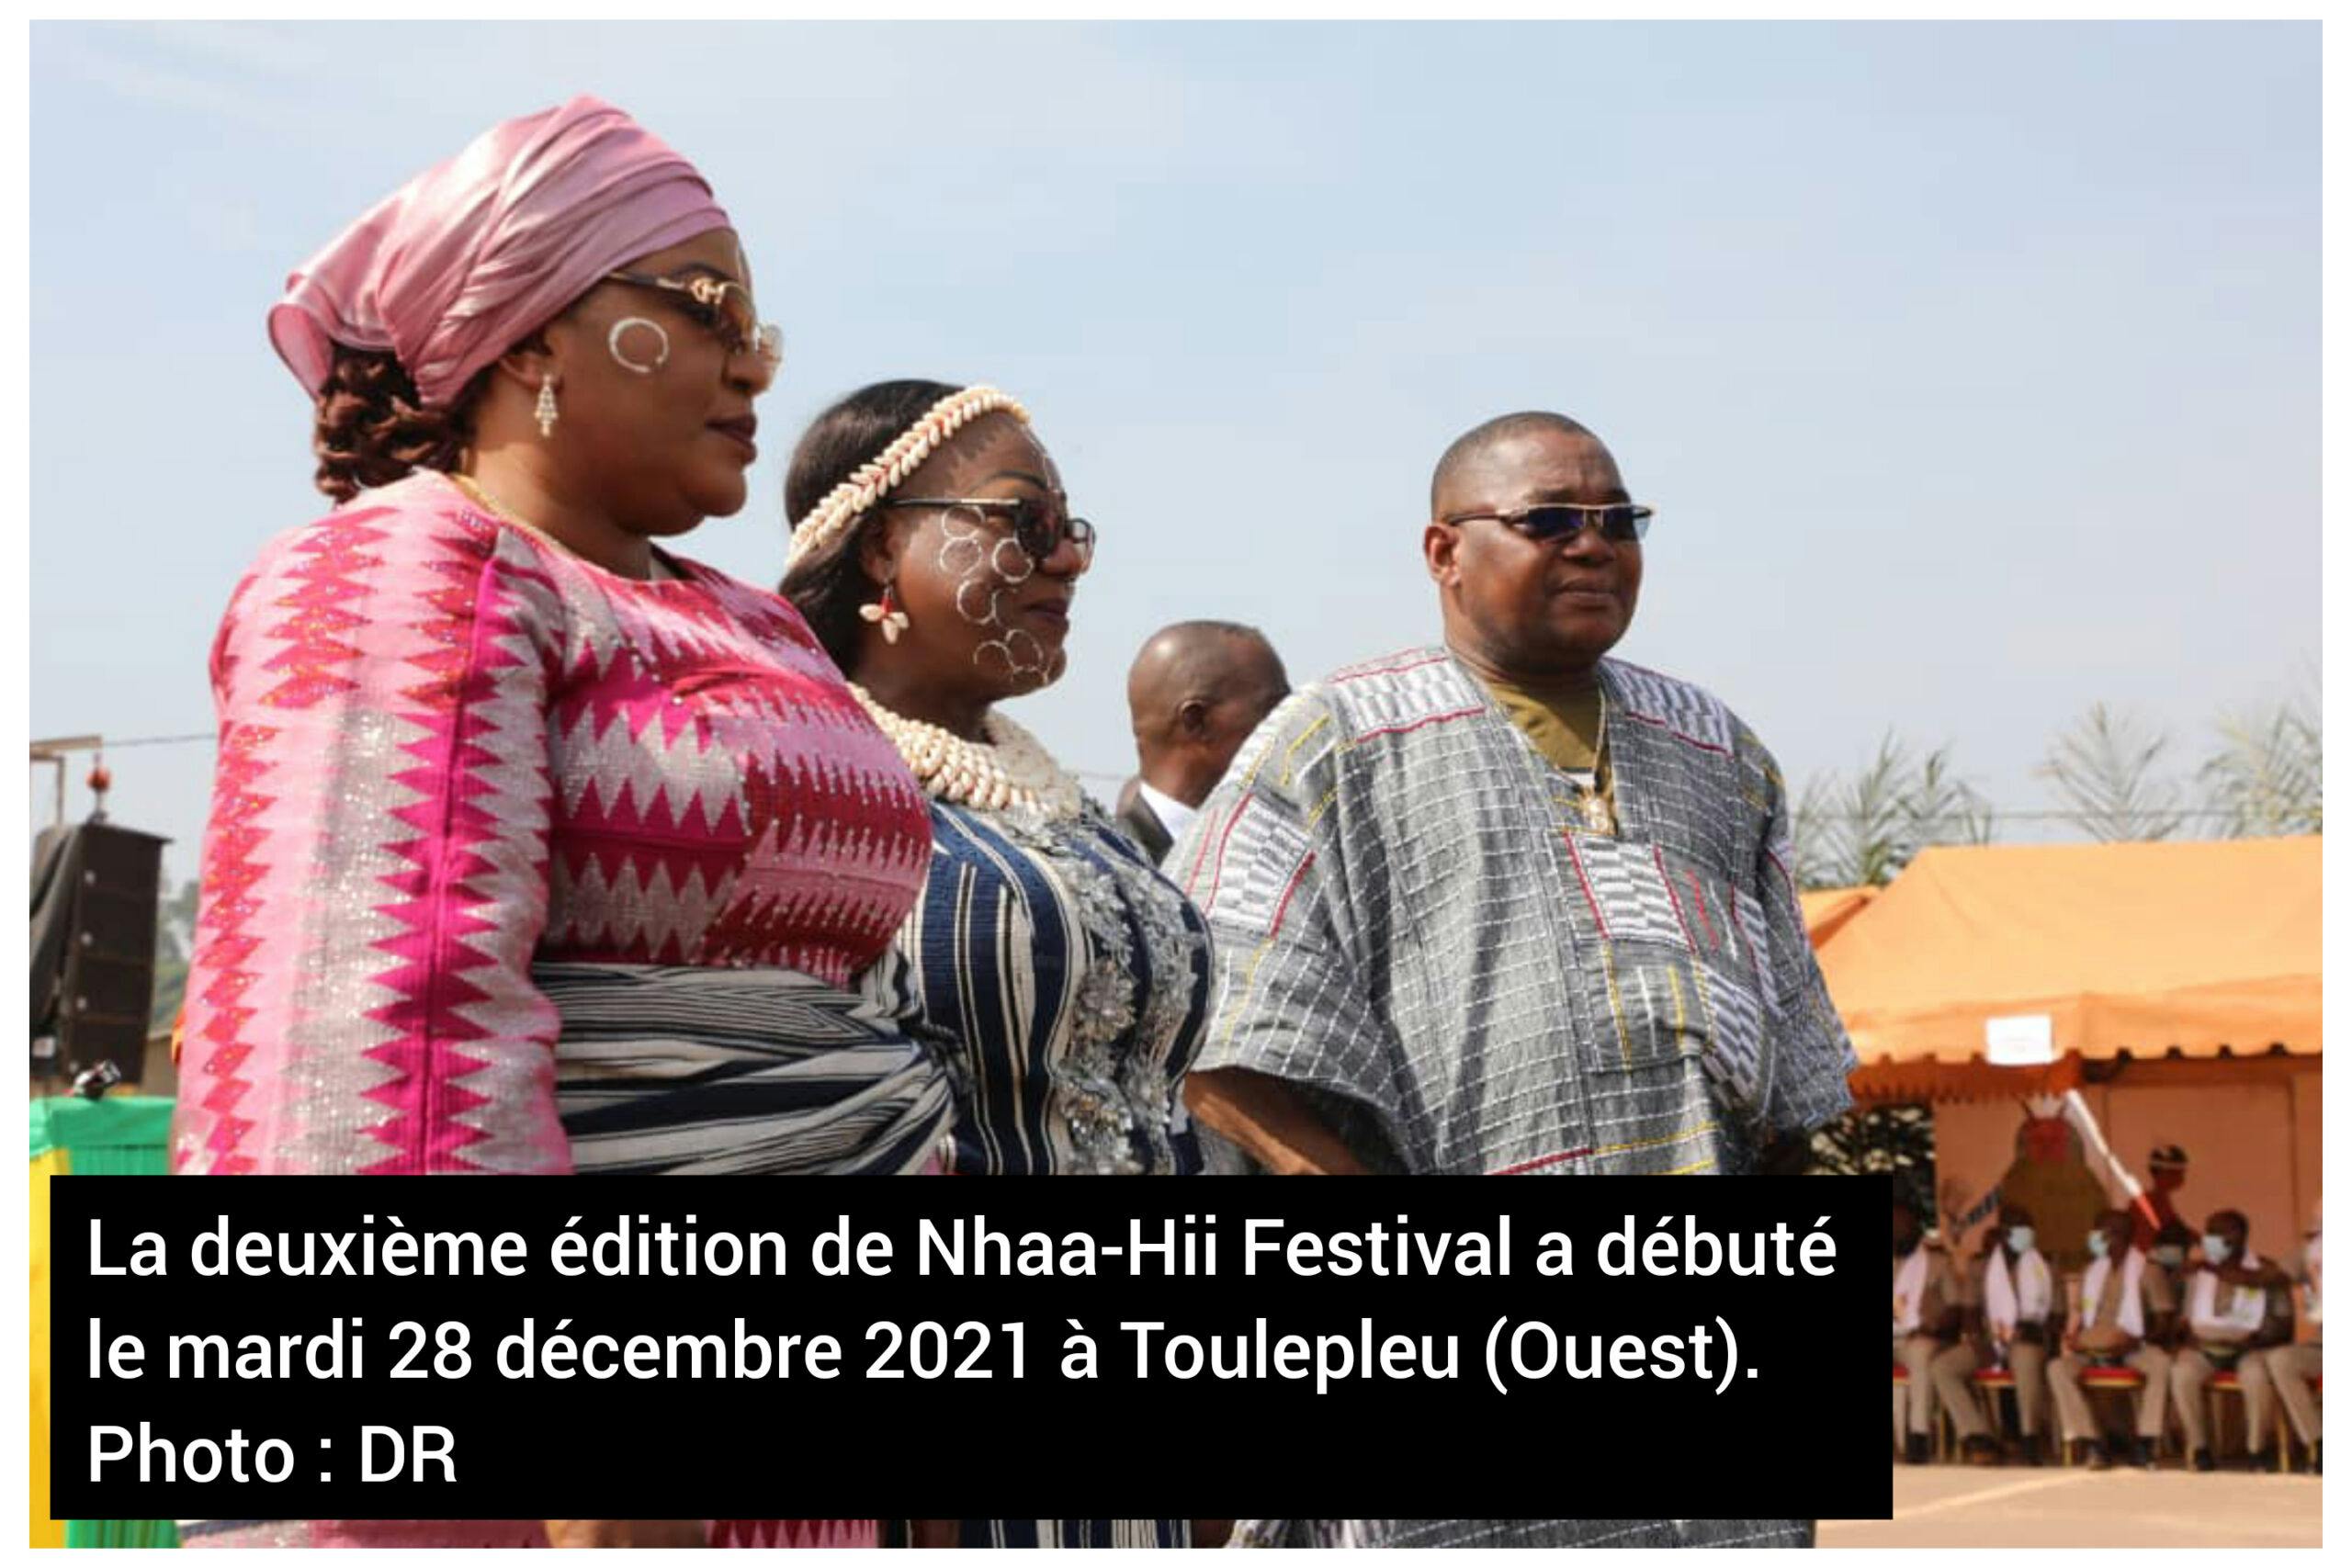 2ème édition-Nhaa-Hii Festival de Toulepleu : Les peuples Gbomi et Kroumen invités d’honneur (cérémonie d’ouverture)